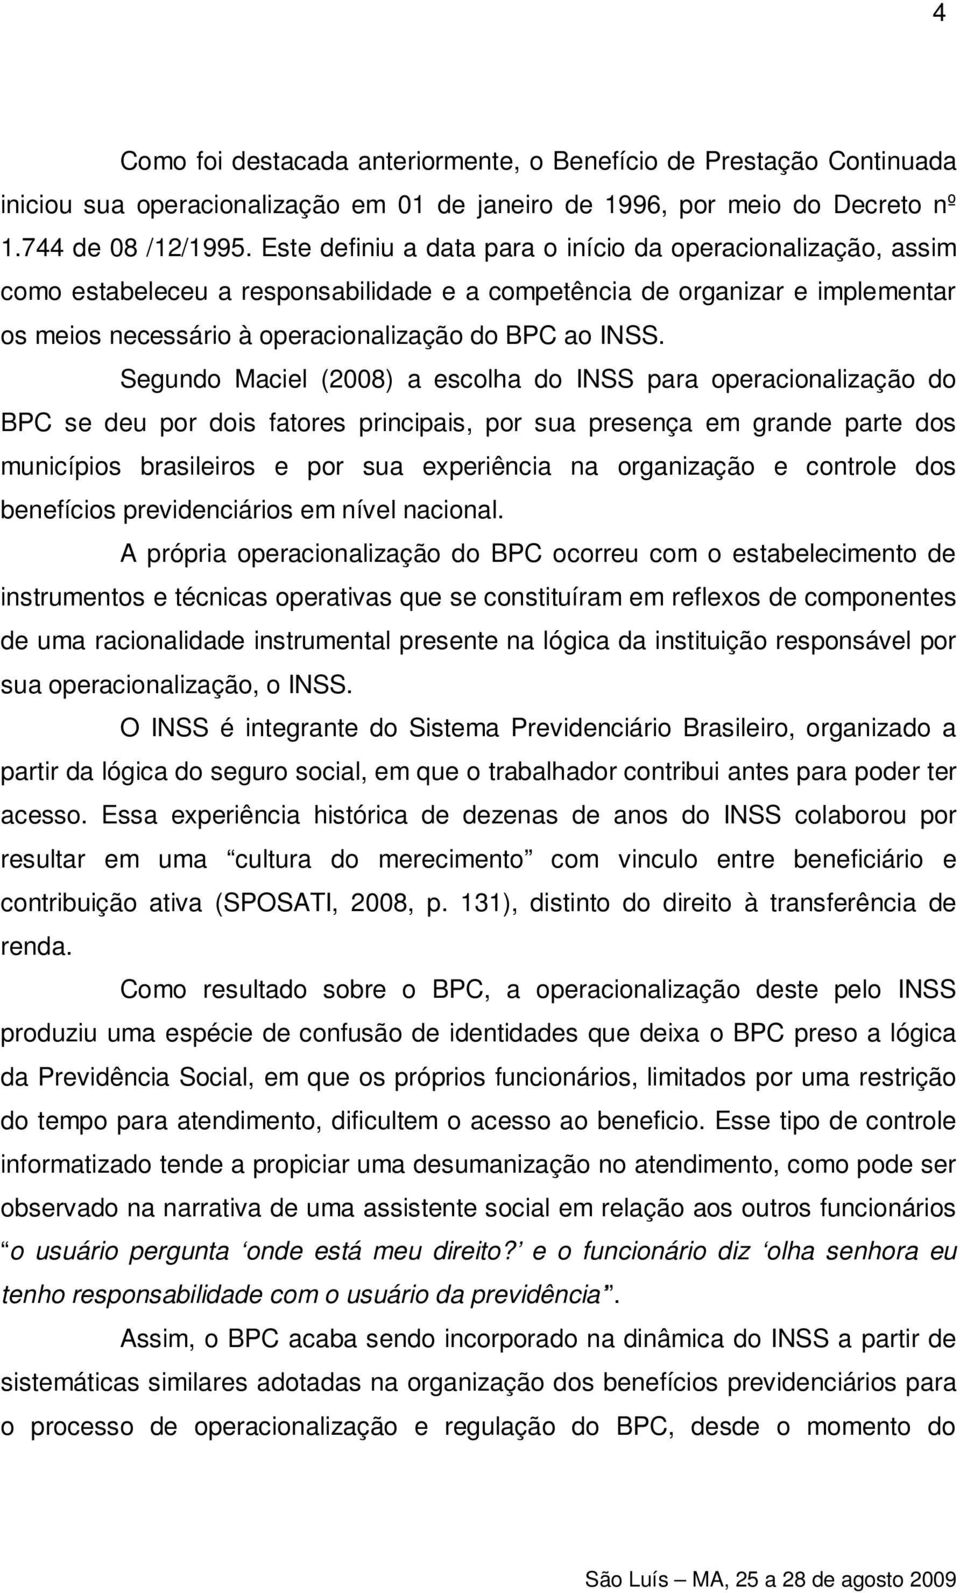 Segundo Maciel (2008) a escolha do INSS para operacionalização do BPC se deu por dois fatores principais, por sua presença em grande parte dos municípios brasileiros e por sua experiência na